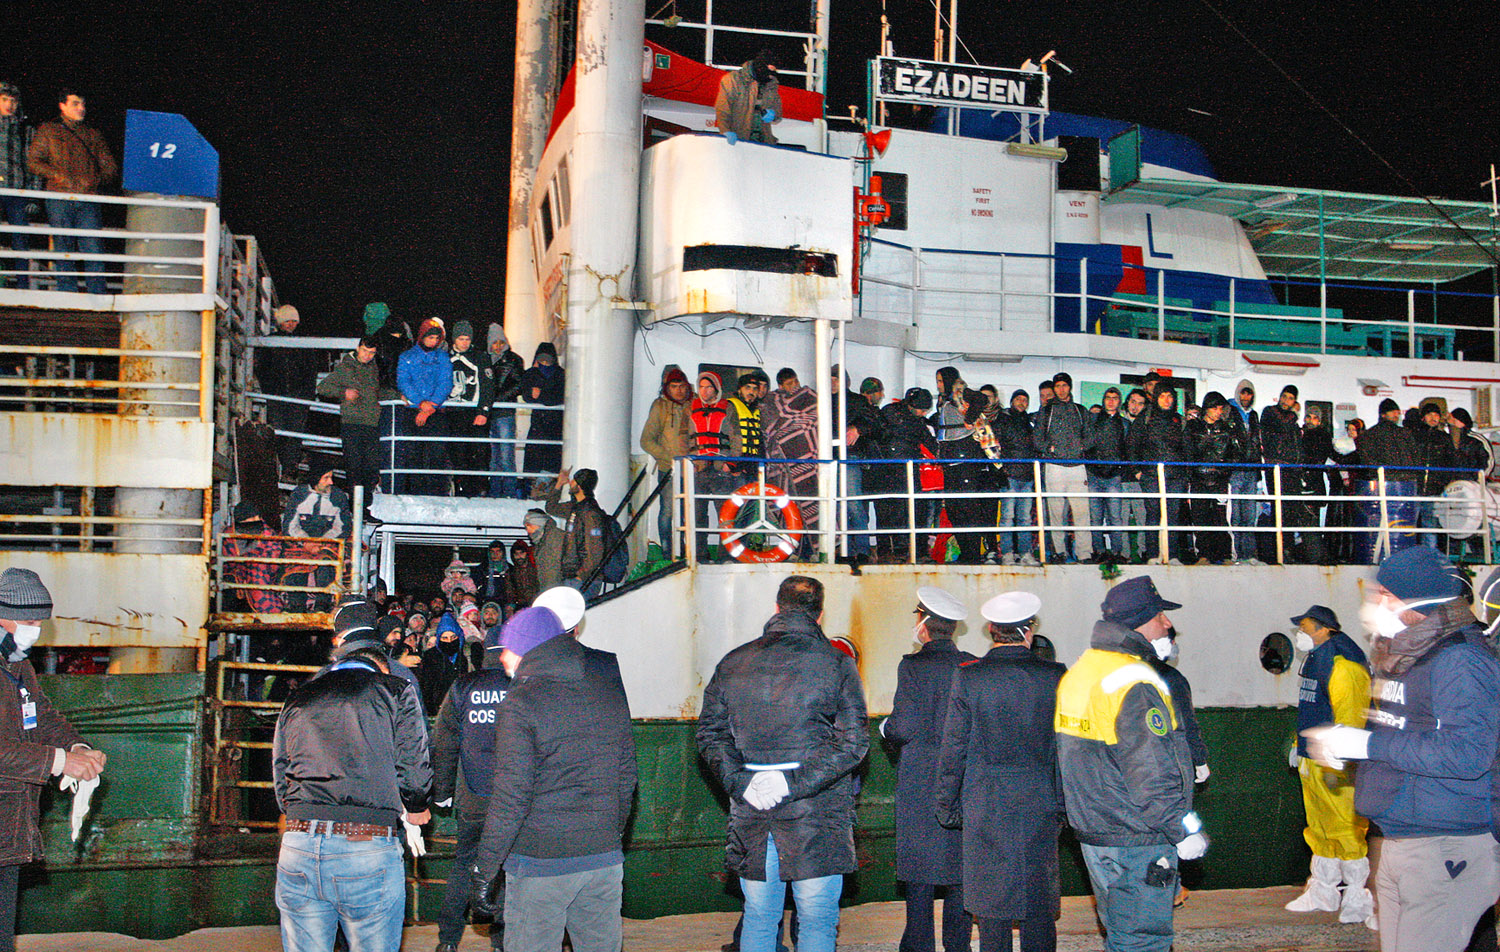 Menekültek a Corigliano Calabro délolasz kikötőben veszteglő Ezadeen hajón